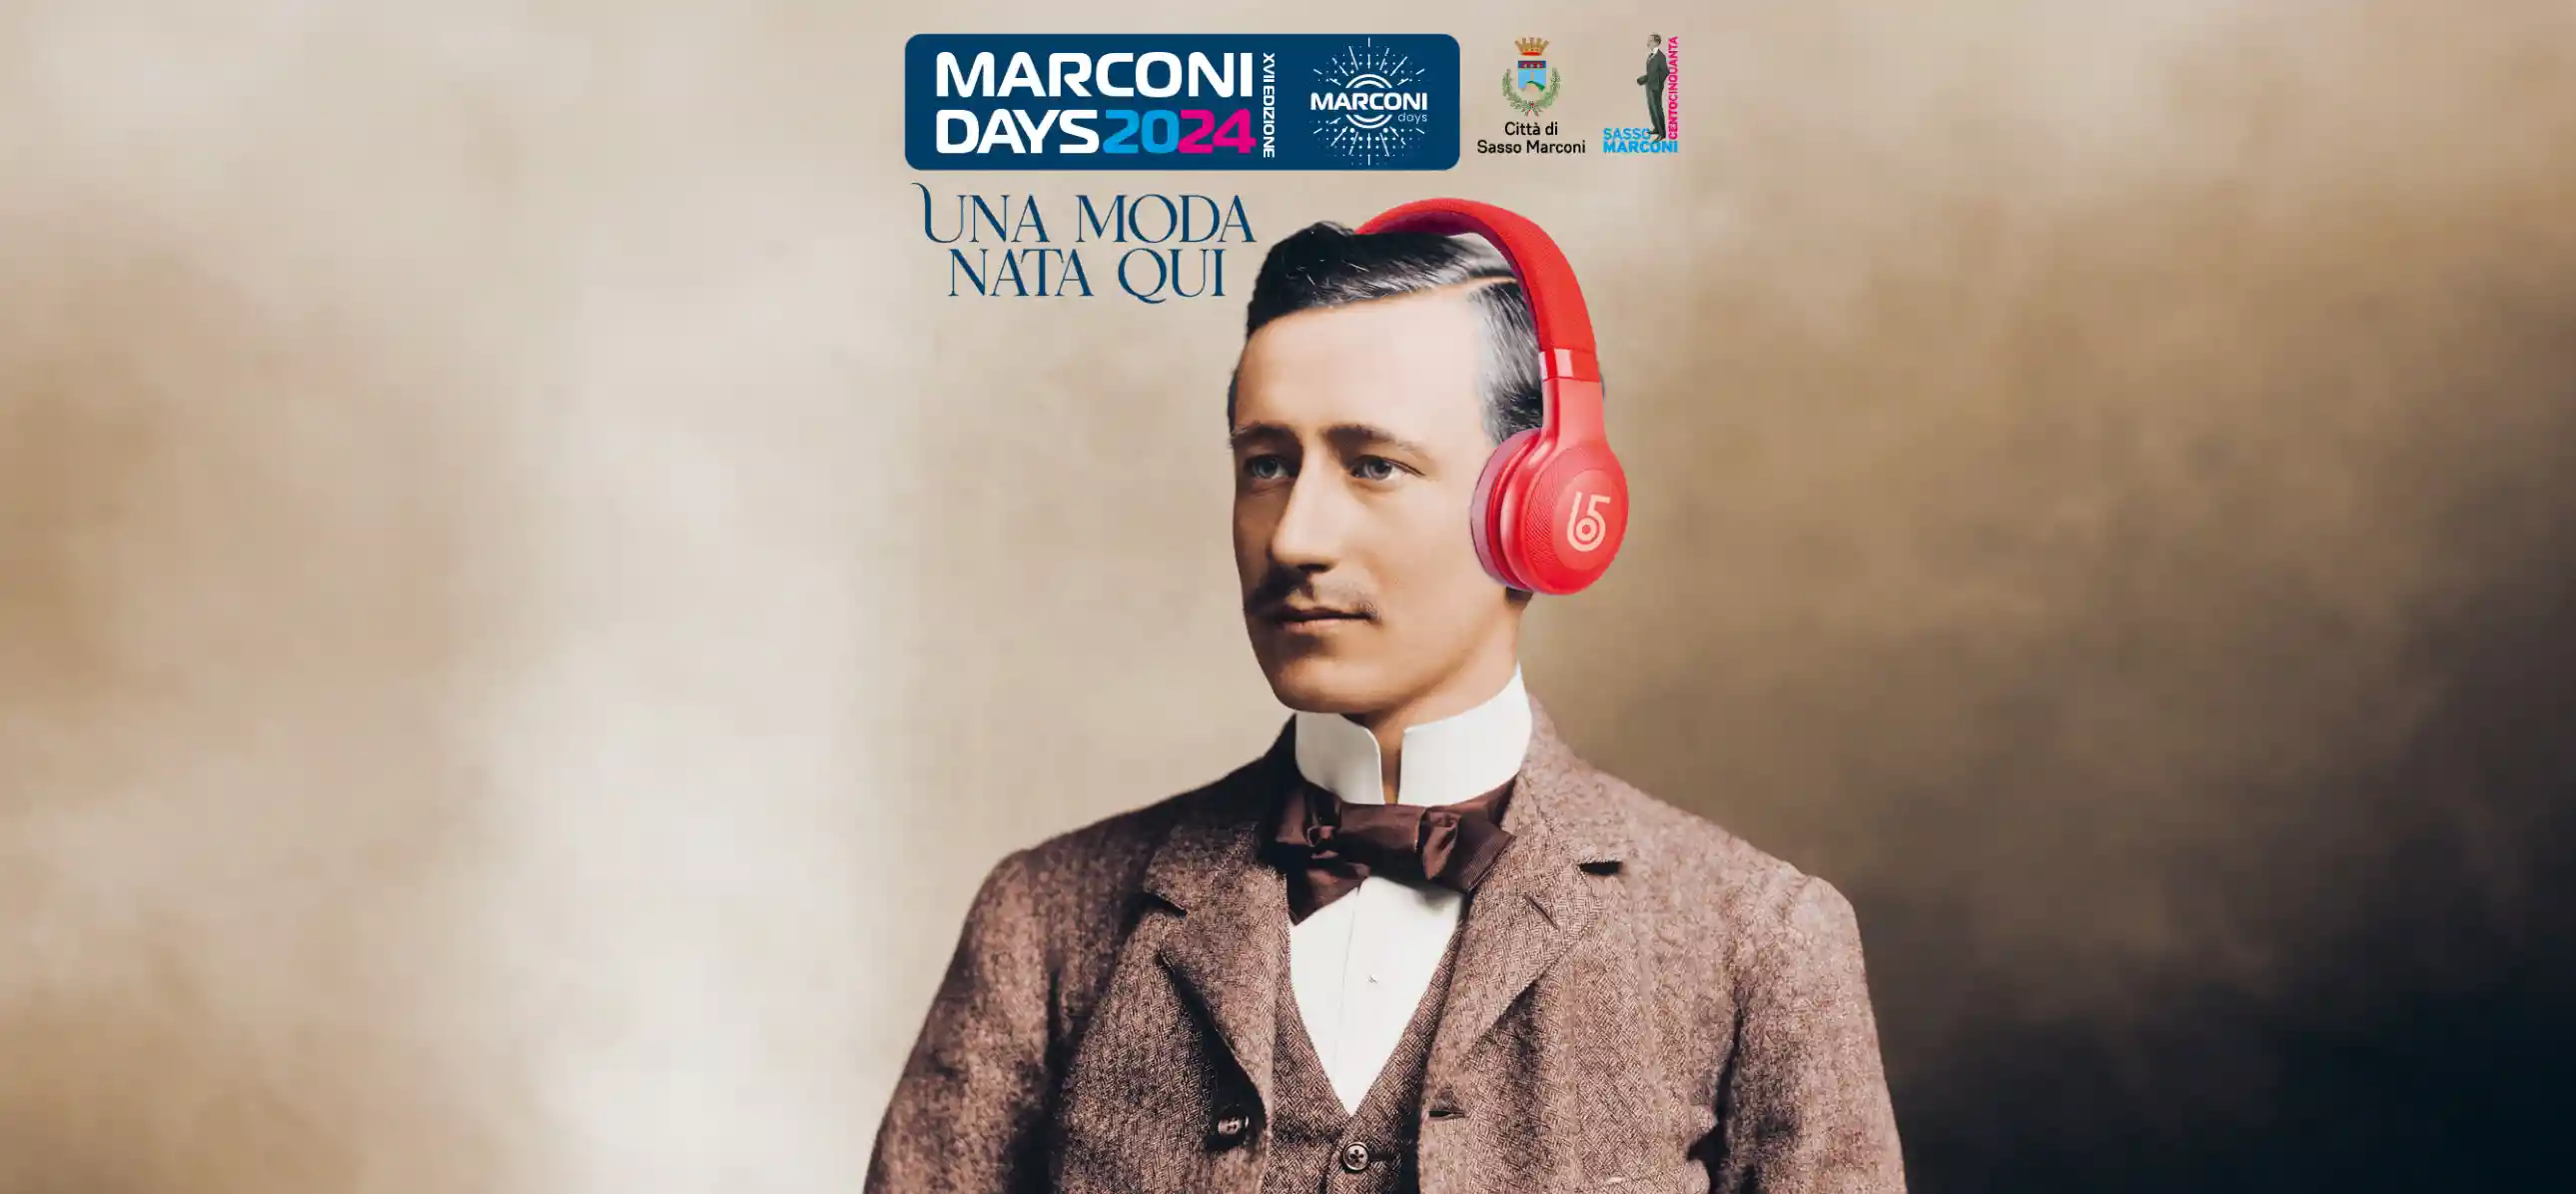 Locandina Marconi Days